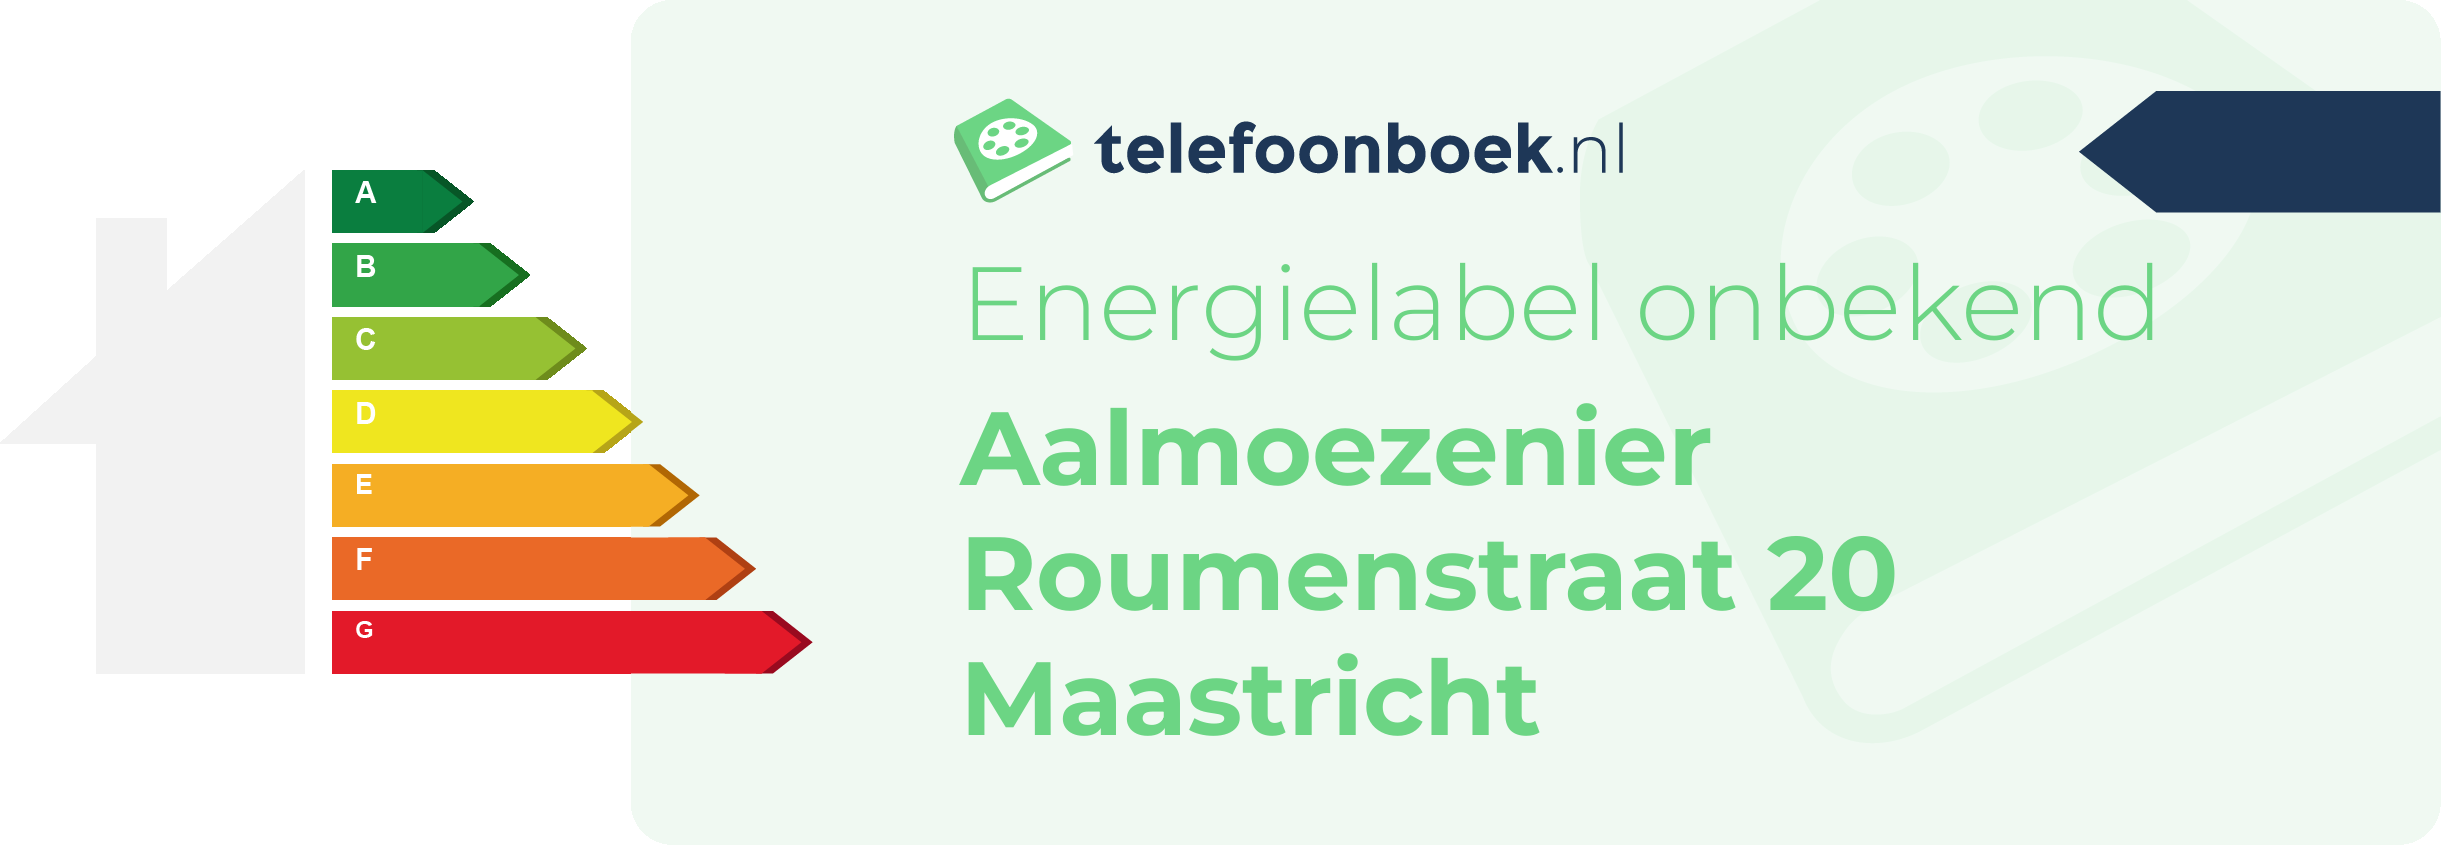 Energielabel Aalmoezenier Roumenstraat 20 Maastricht